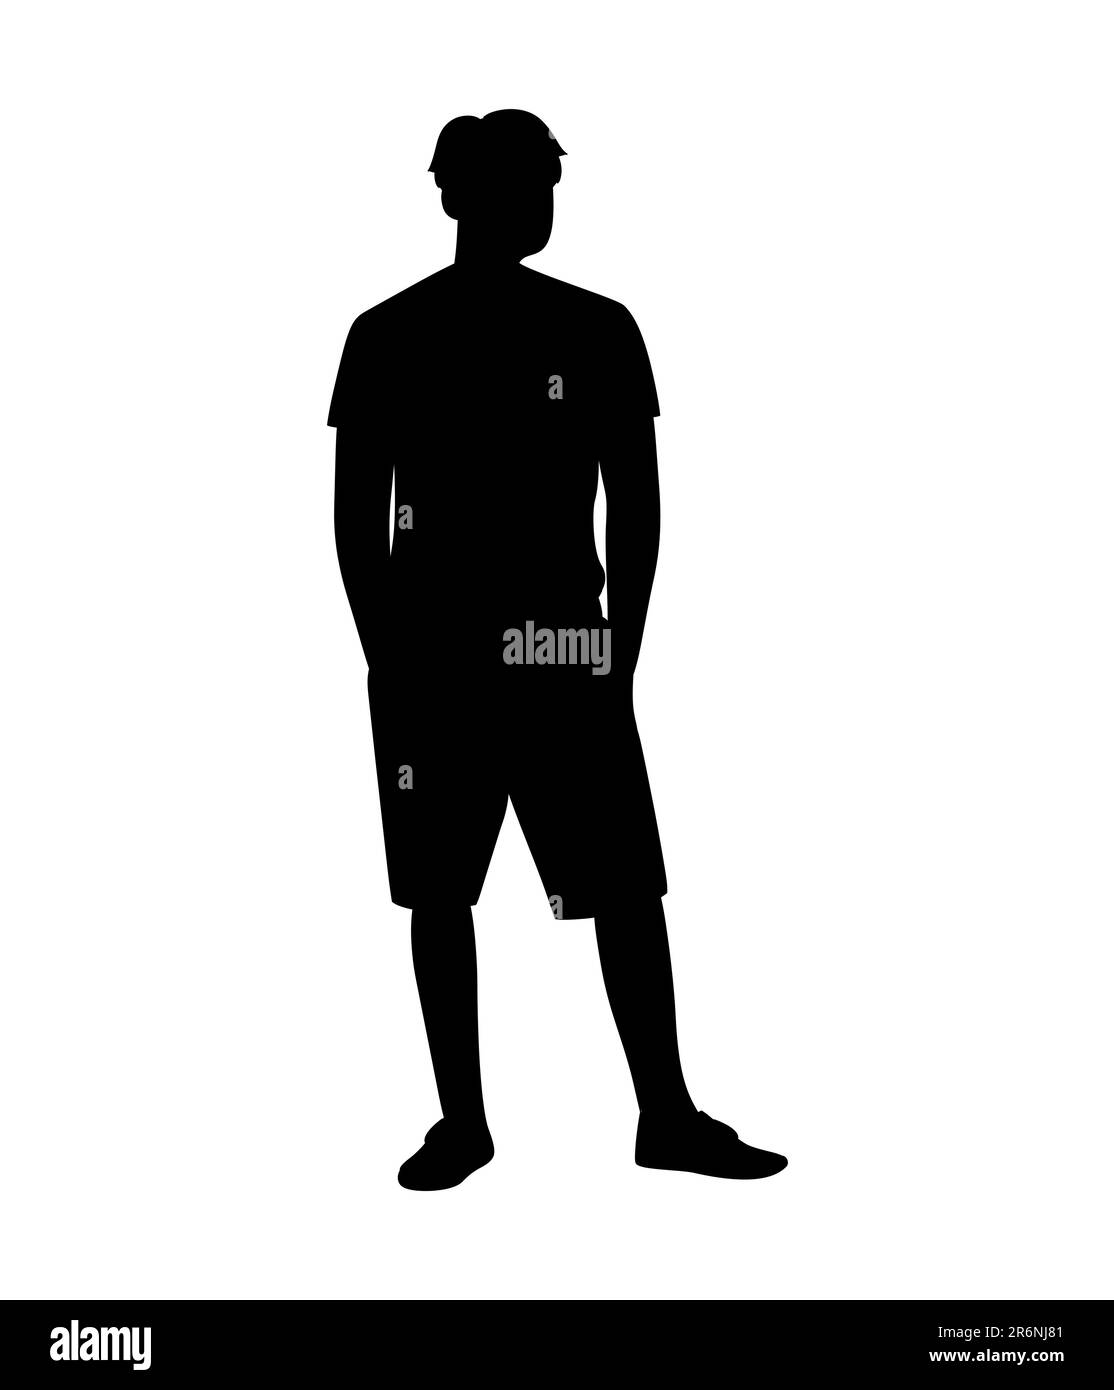 Schwarze Silhouette eines Mannes, der T-Shirt und Shorts trägt, steht, Freizeitkleidung, Vektordarstellung Stock Vektor